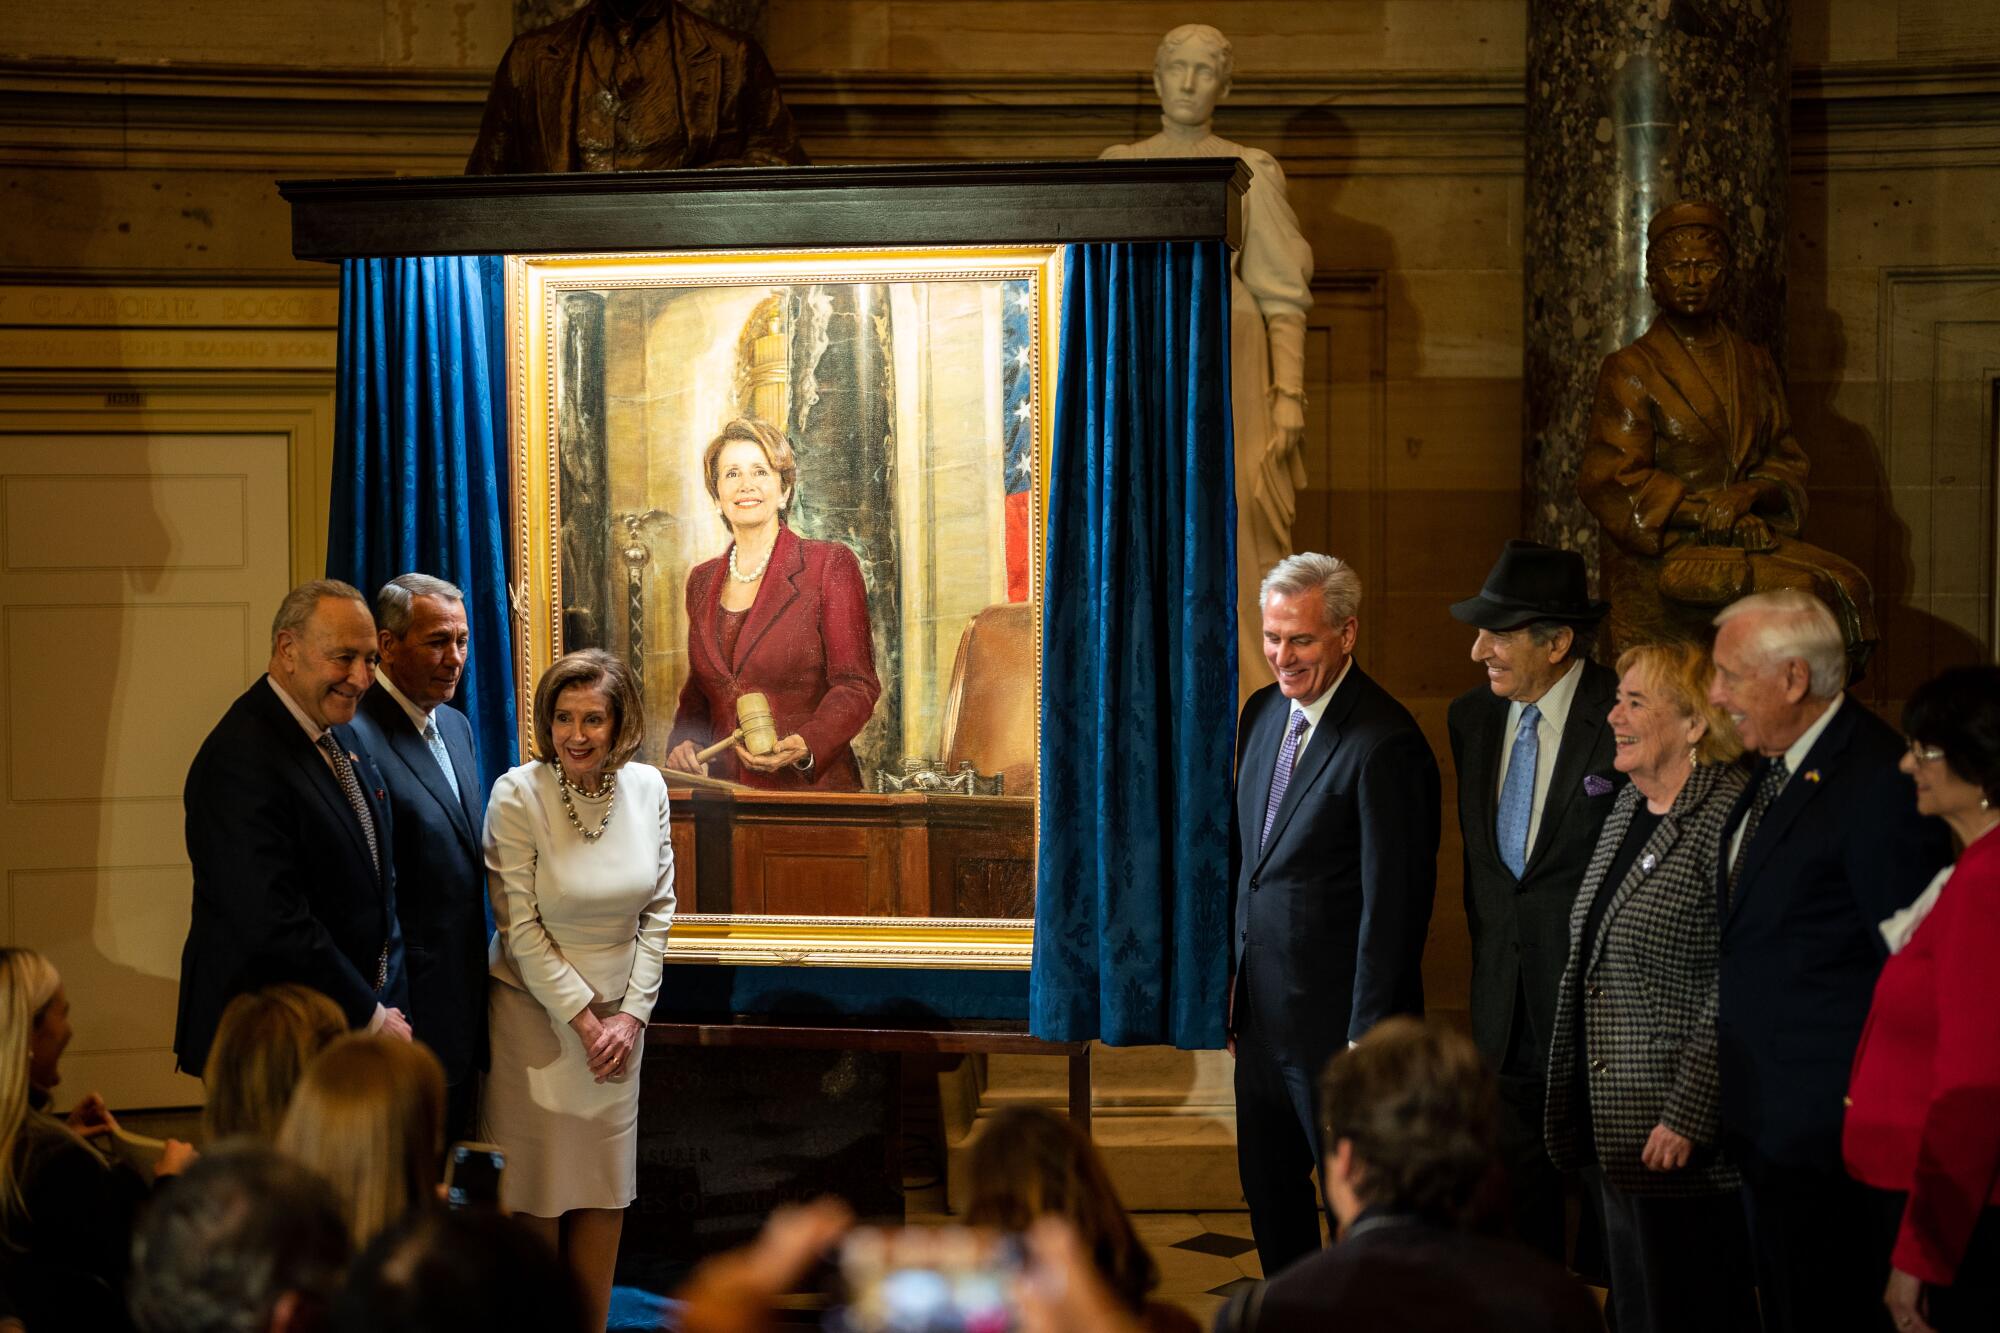 ナンシー・ペロシ下院議長は、華やかな部屋で彼女の絵の近くで他の人々と写真を撮っている。